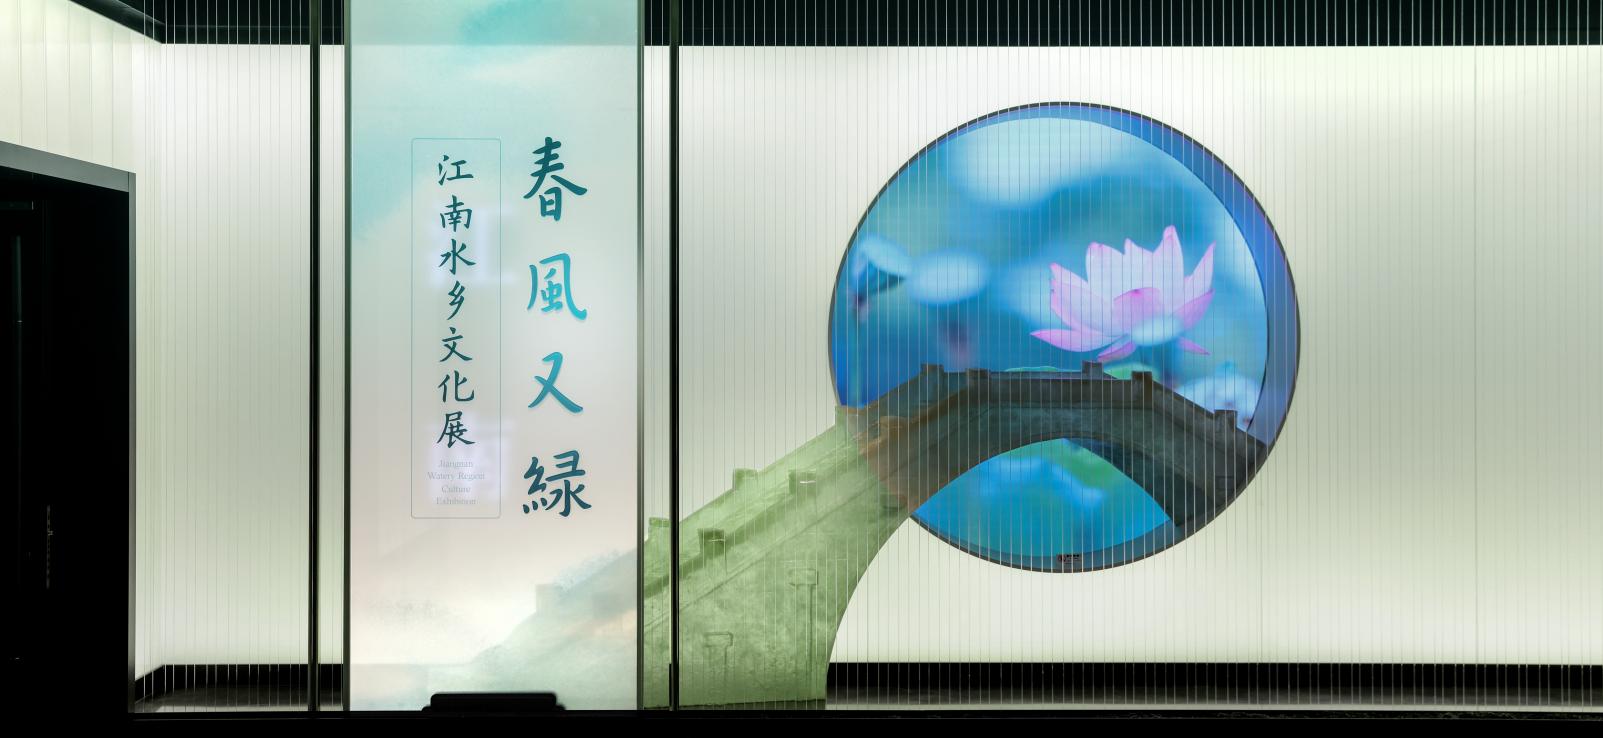 诗意的展/适意地观——杭州临平博物馆“春风又绿”展览观展随笔